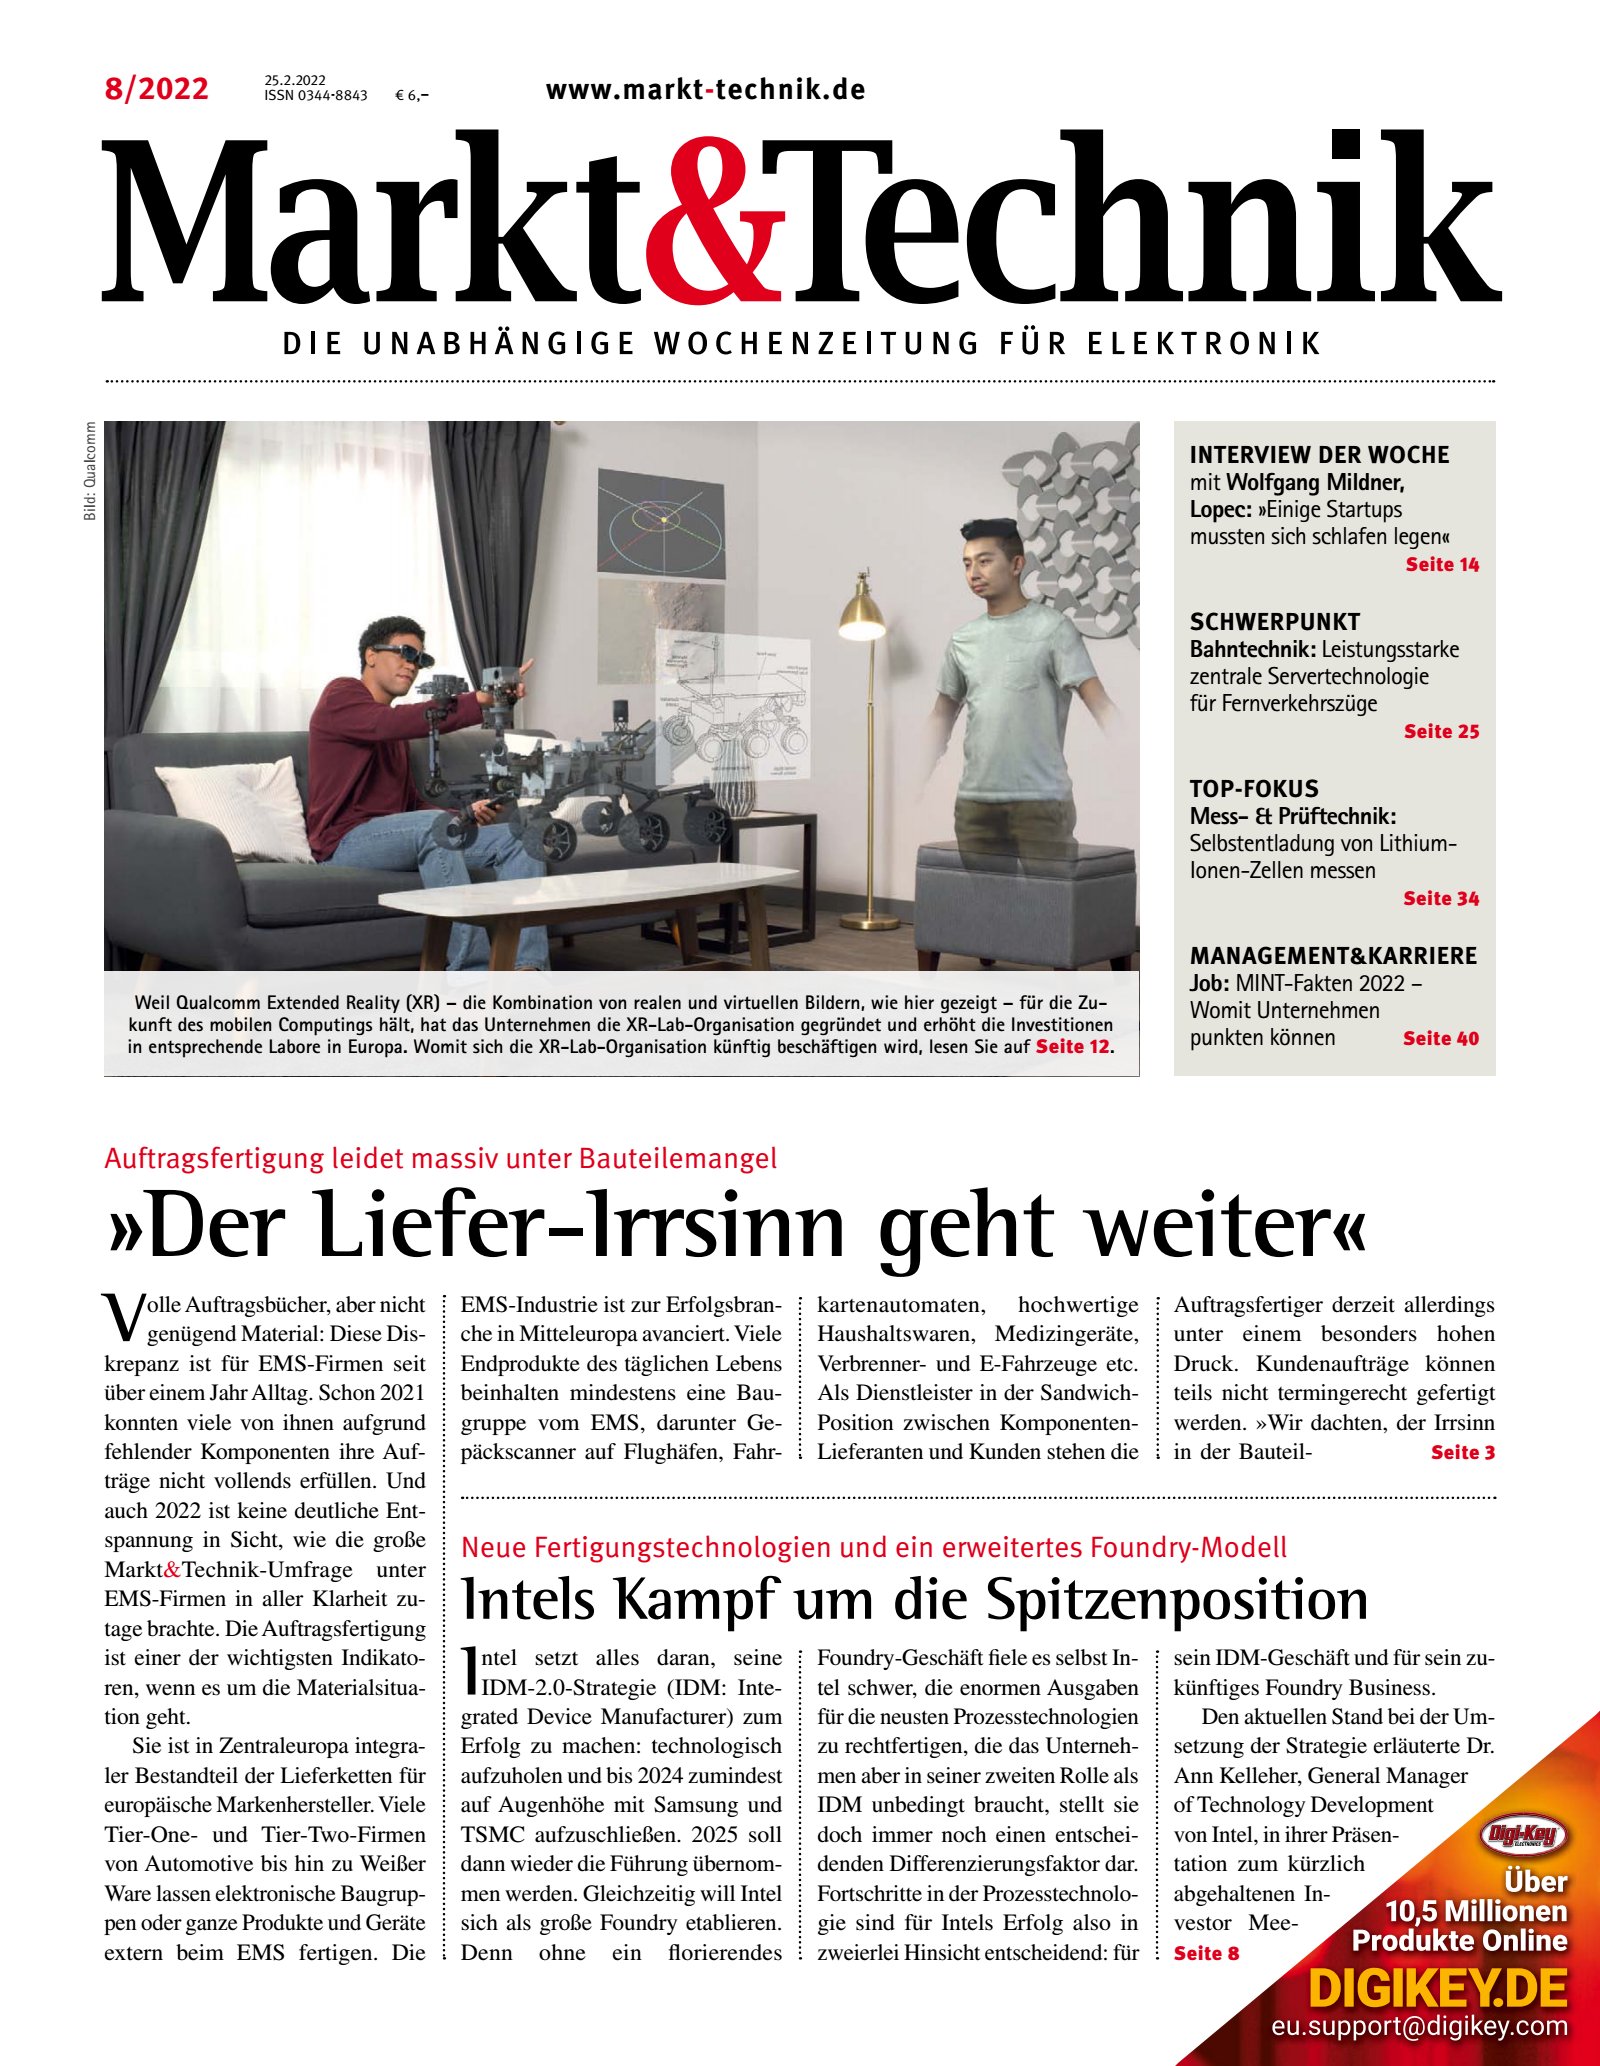 Markt&Technik 08/2022 Digital